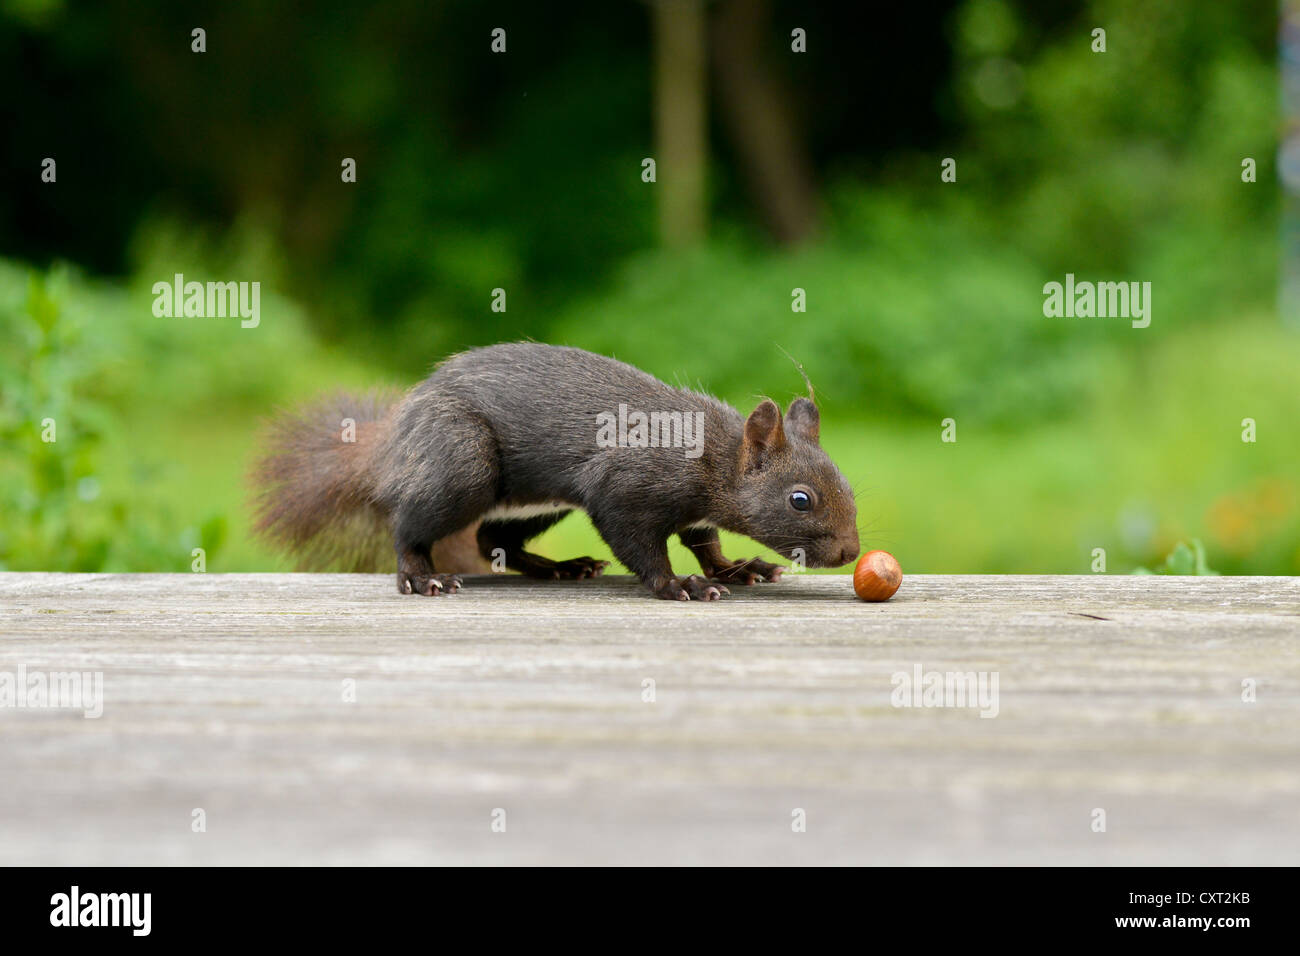 L'écureuil roux (Sciurus vulgaris) l'examen d'une noisette sur une terrasse en bois Banque D'Images